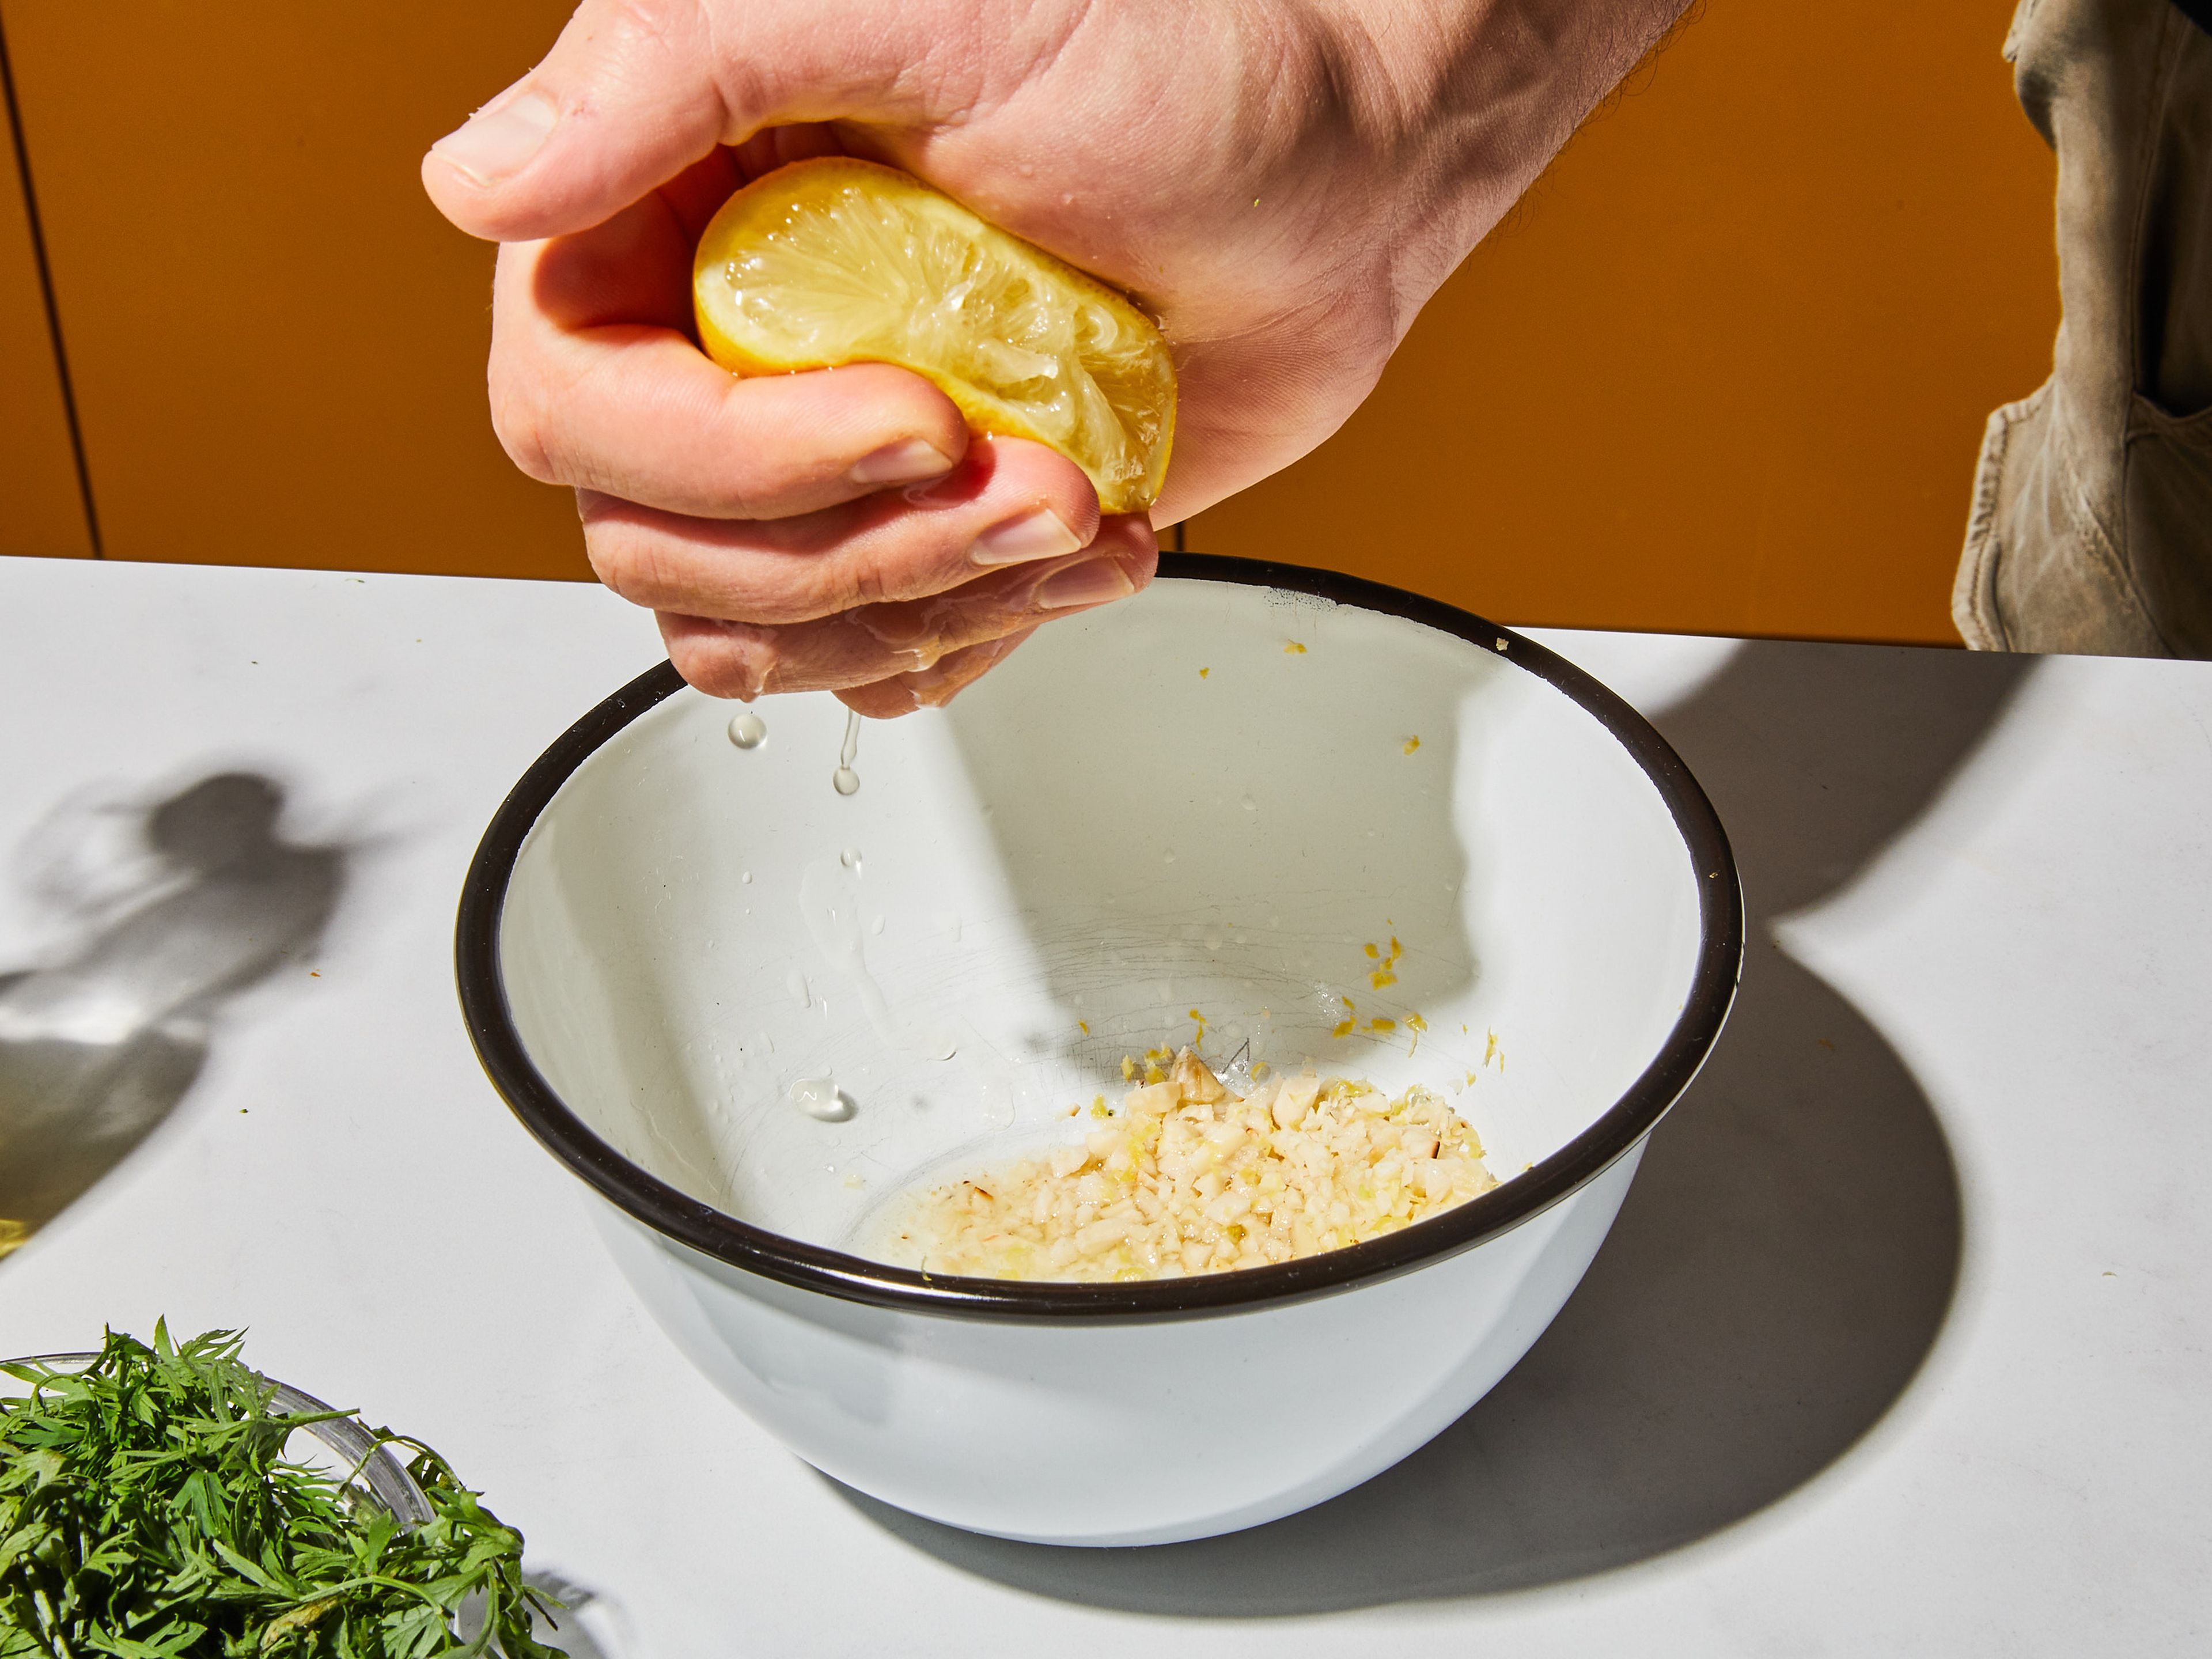 Die gerösteten Mandeln grob hacken und in eine kleine Schüssel geben. Das Karottengrün mit den Händen fest zusammendrücken und rollen, damit es sich leichter hacken lässt. Dann fein hacken und in die Schüssel mit den Mandeln geben. Die Zitrone abreiben, den Saft auspressen und ebenfalls in die Schüssel geben. Knoblauch in die Schüssel reiben, etwas Olivenöl und unsere DRESSING UP GEWÜRZMISCHUNG (falls verwendet) dazugeben, mit Pfeffer und etwas Salz abschmecken und gut vermischen. Zum Servieren Quinoa auf Tellern oder Schüsseln verteilen. Mit dem gerösteten Gemüse und der Karotten-Gremolata anrichten. Guten Appetit!